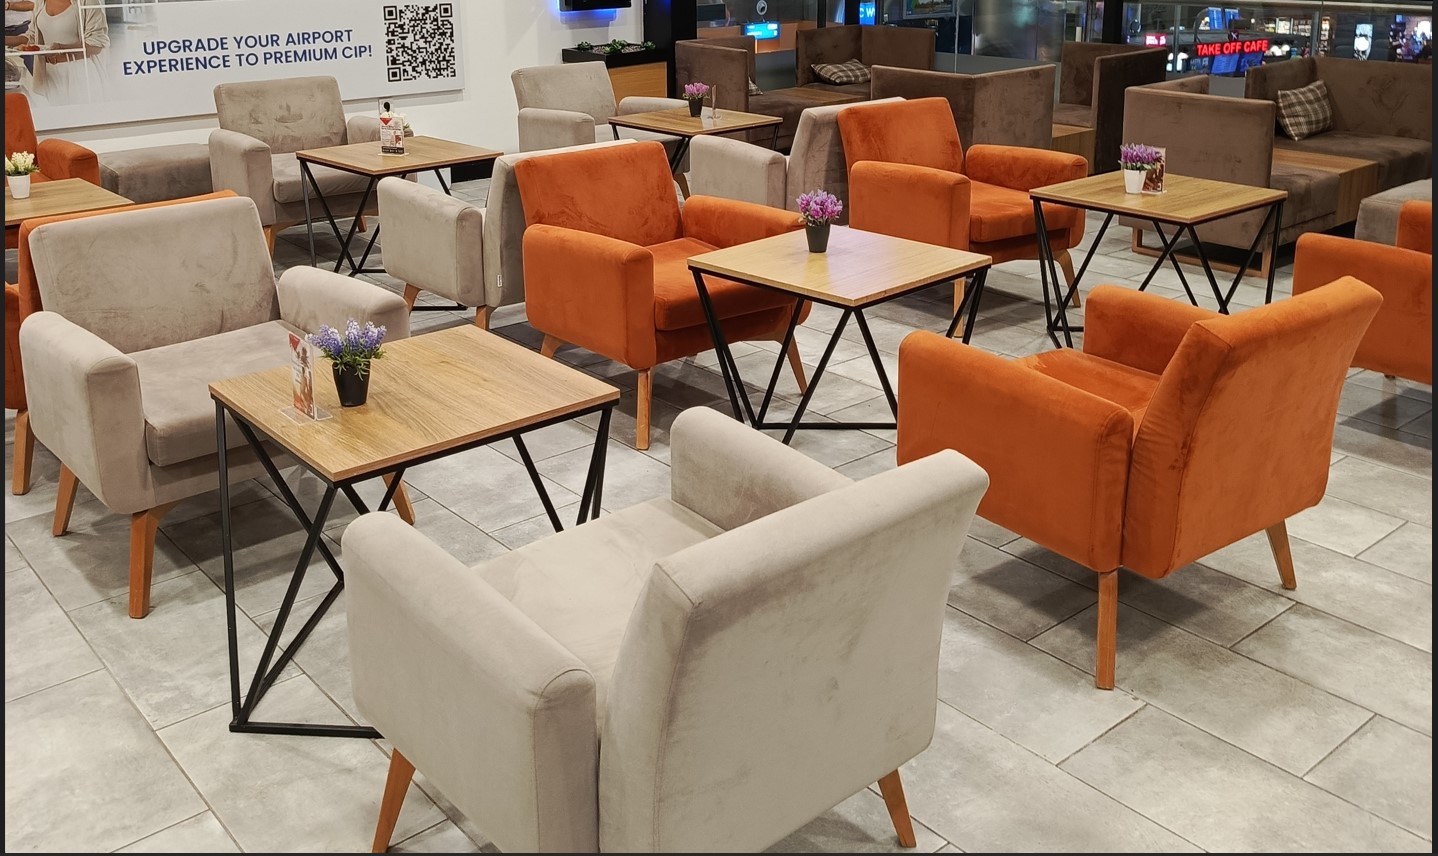 Обзор бизнес зала в аэропорту в Турции - Анталья Терминал 2 Шведский стол  Лаунж Business Lounges